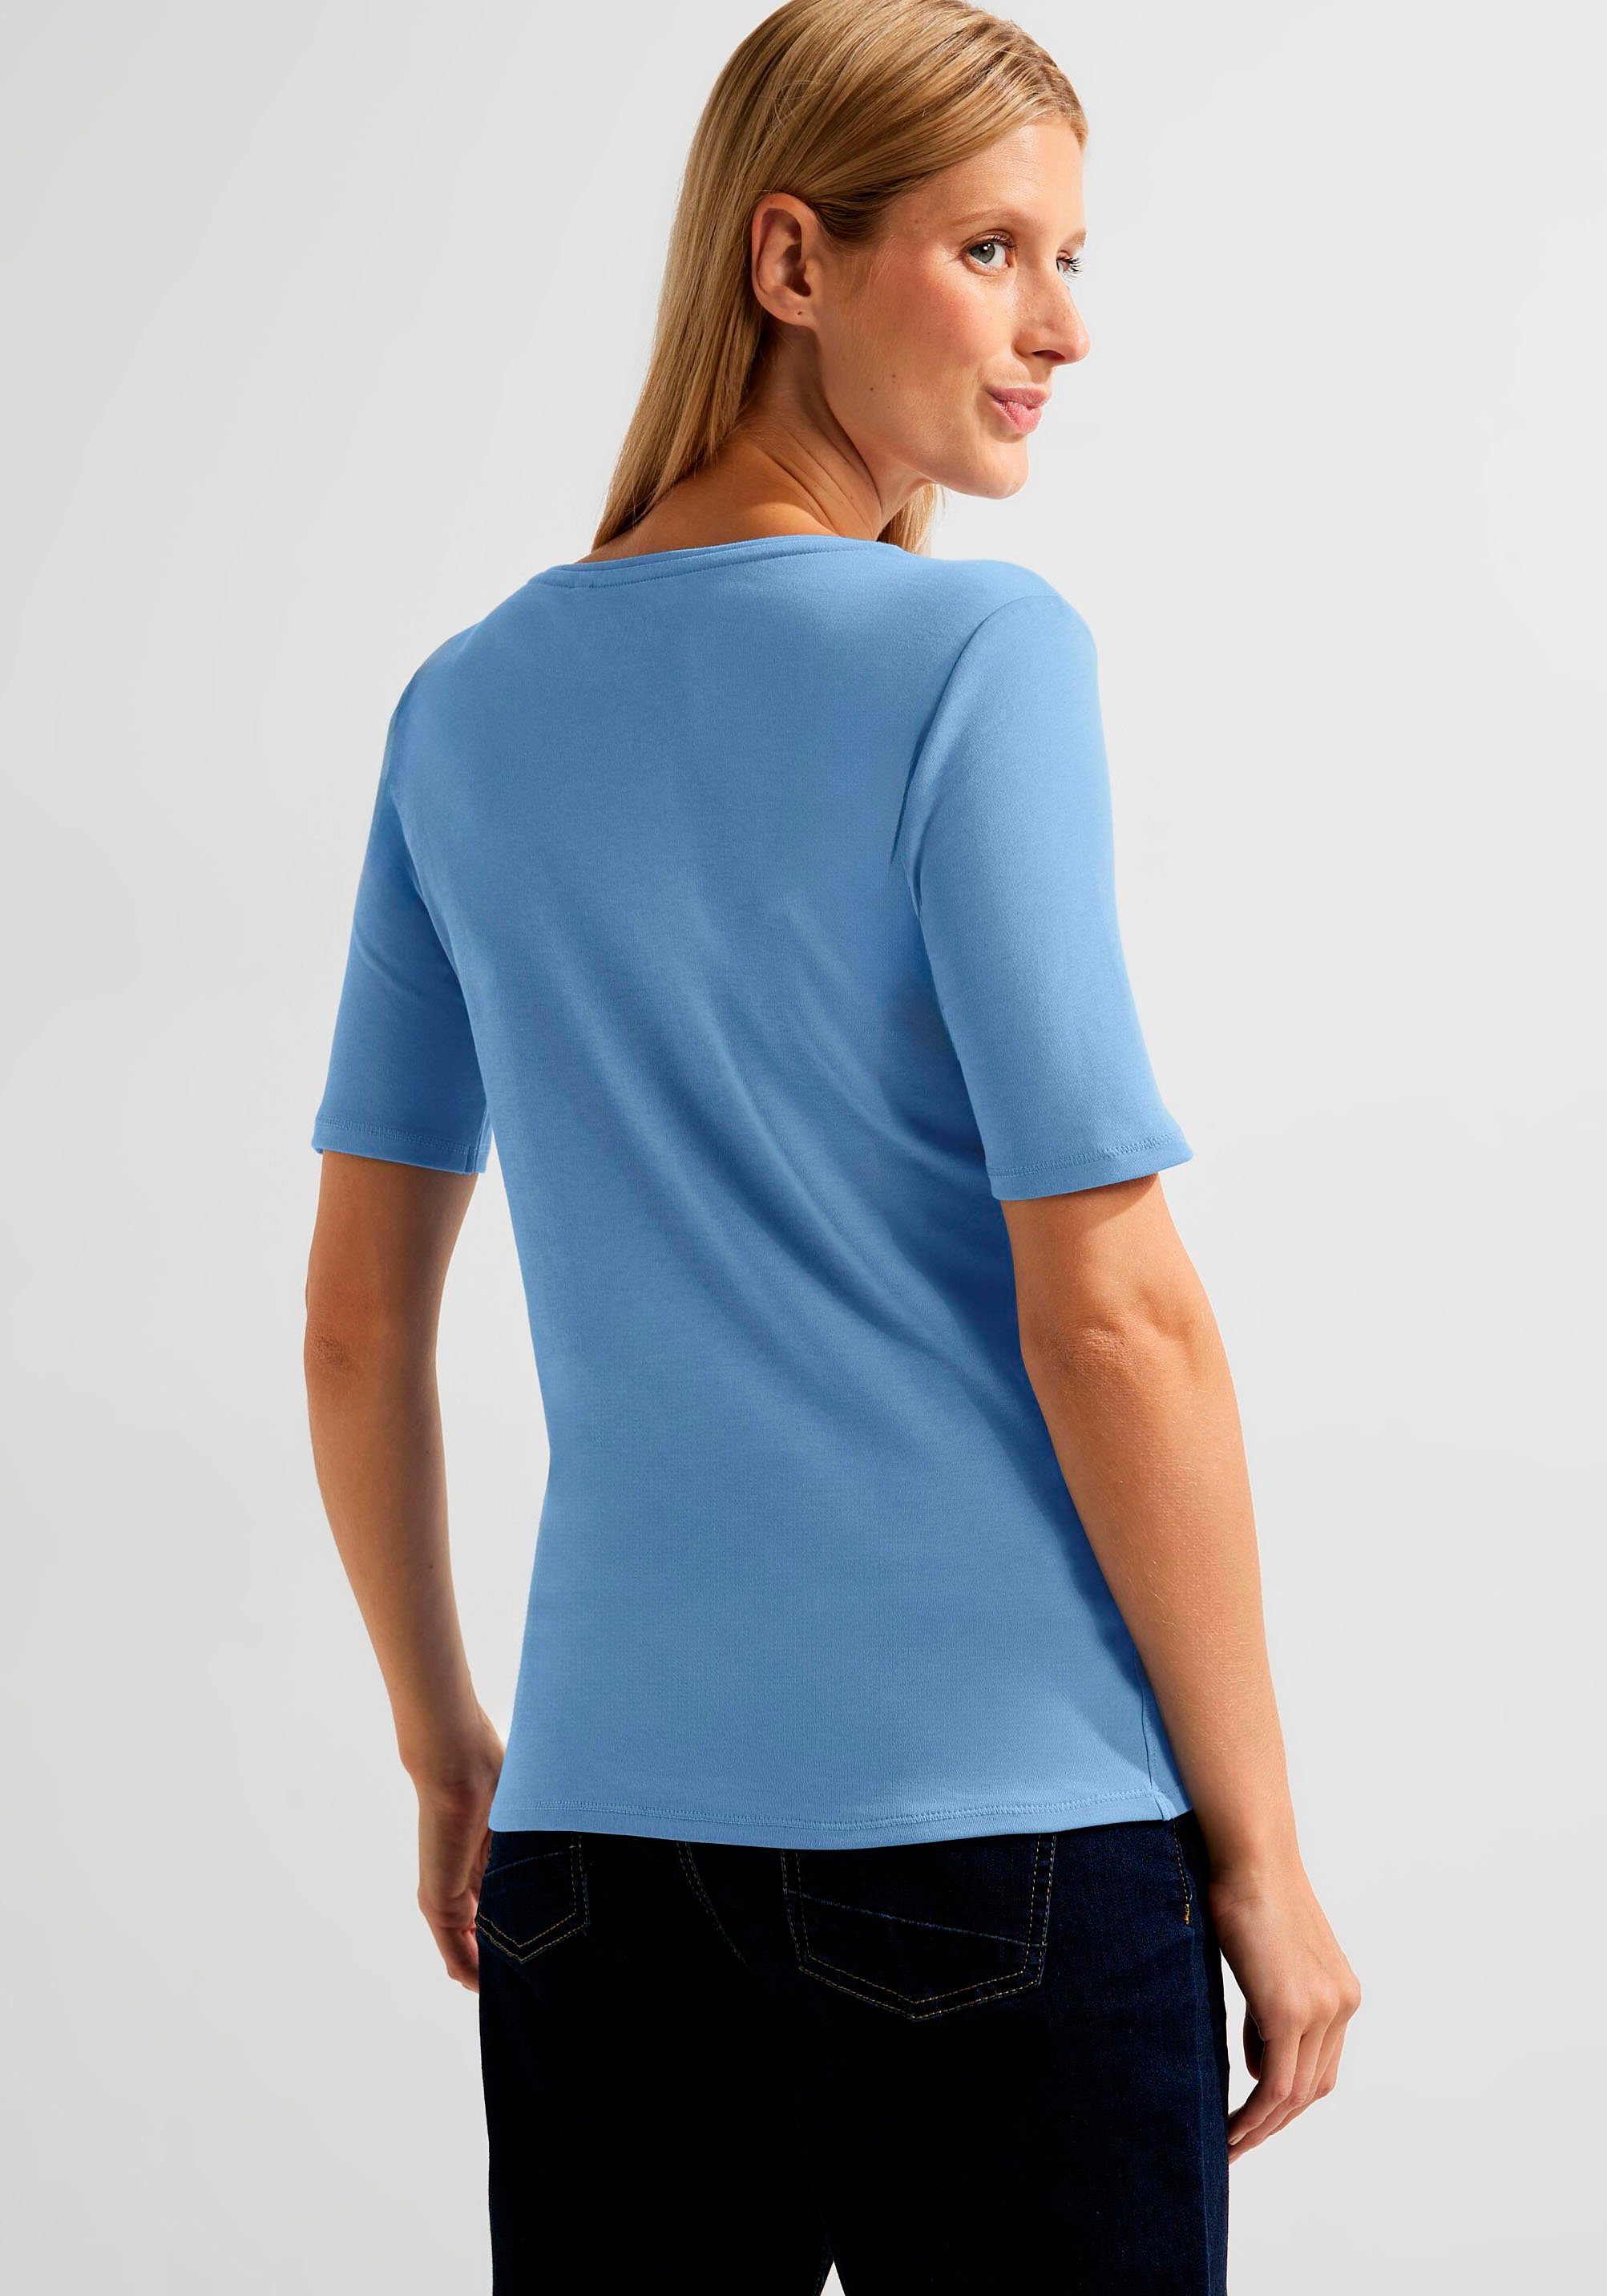 Lena mit Cecil Style NOS real T-Shirt Rundhalsausschnitt blue klassischem